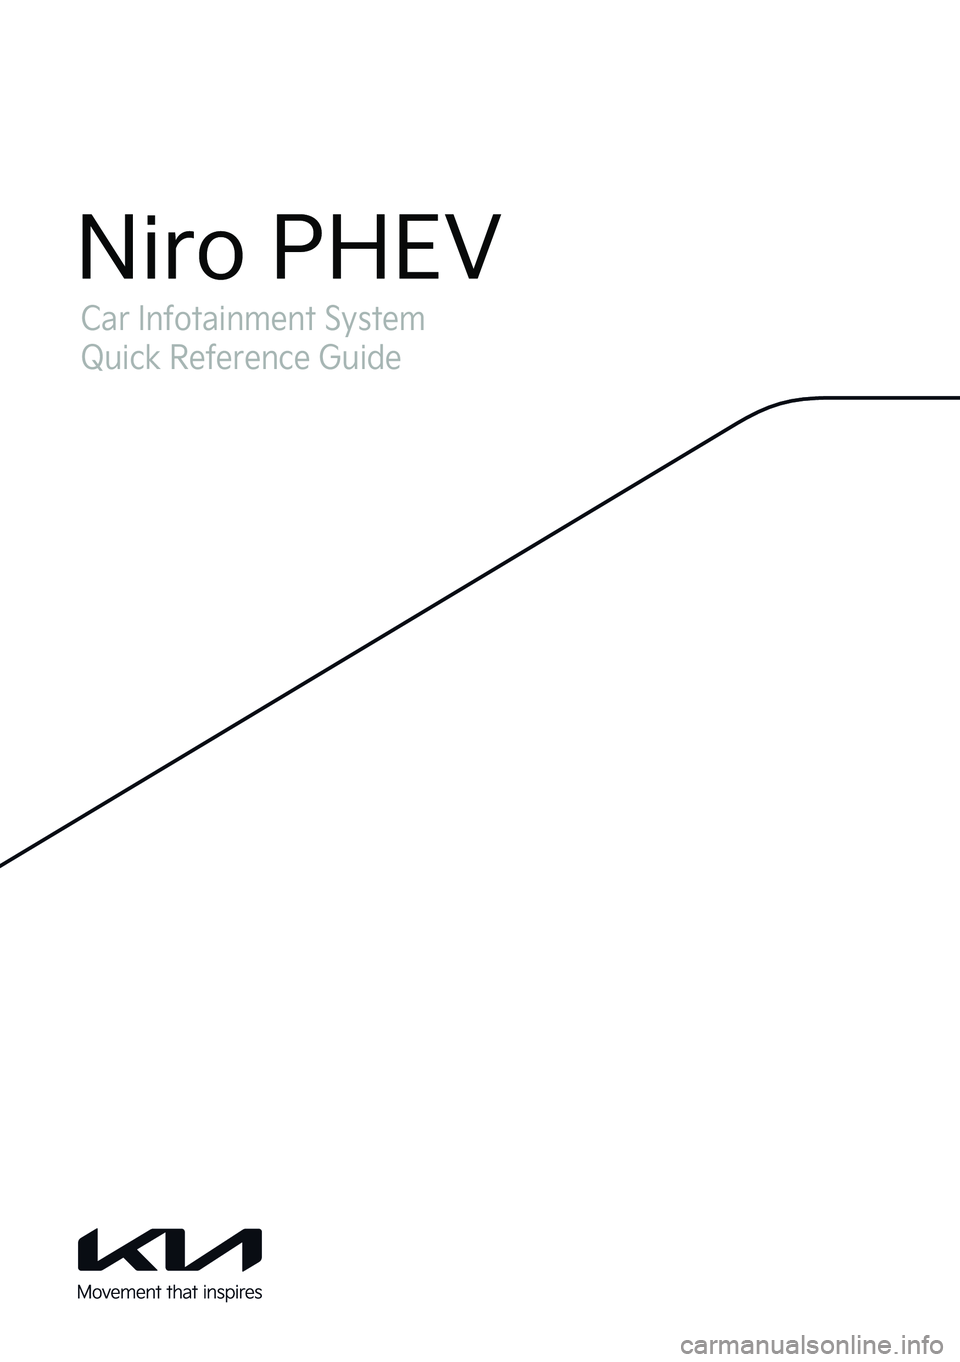 KIA NIRO PHEV 2022  Navigation System Quick Reference Guide Car Infotainment System
Quick Reference Guide
Niro PHEV  